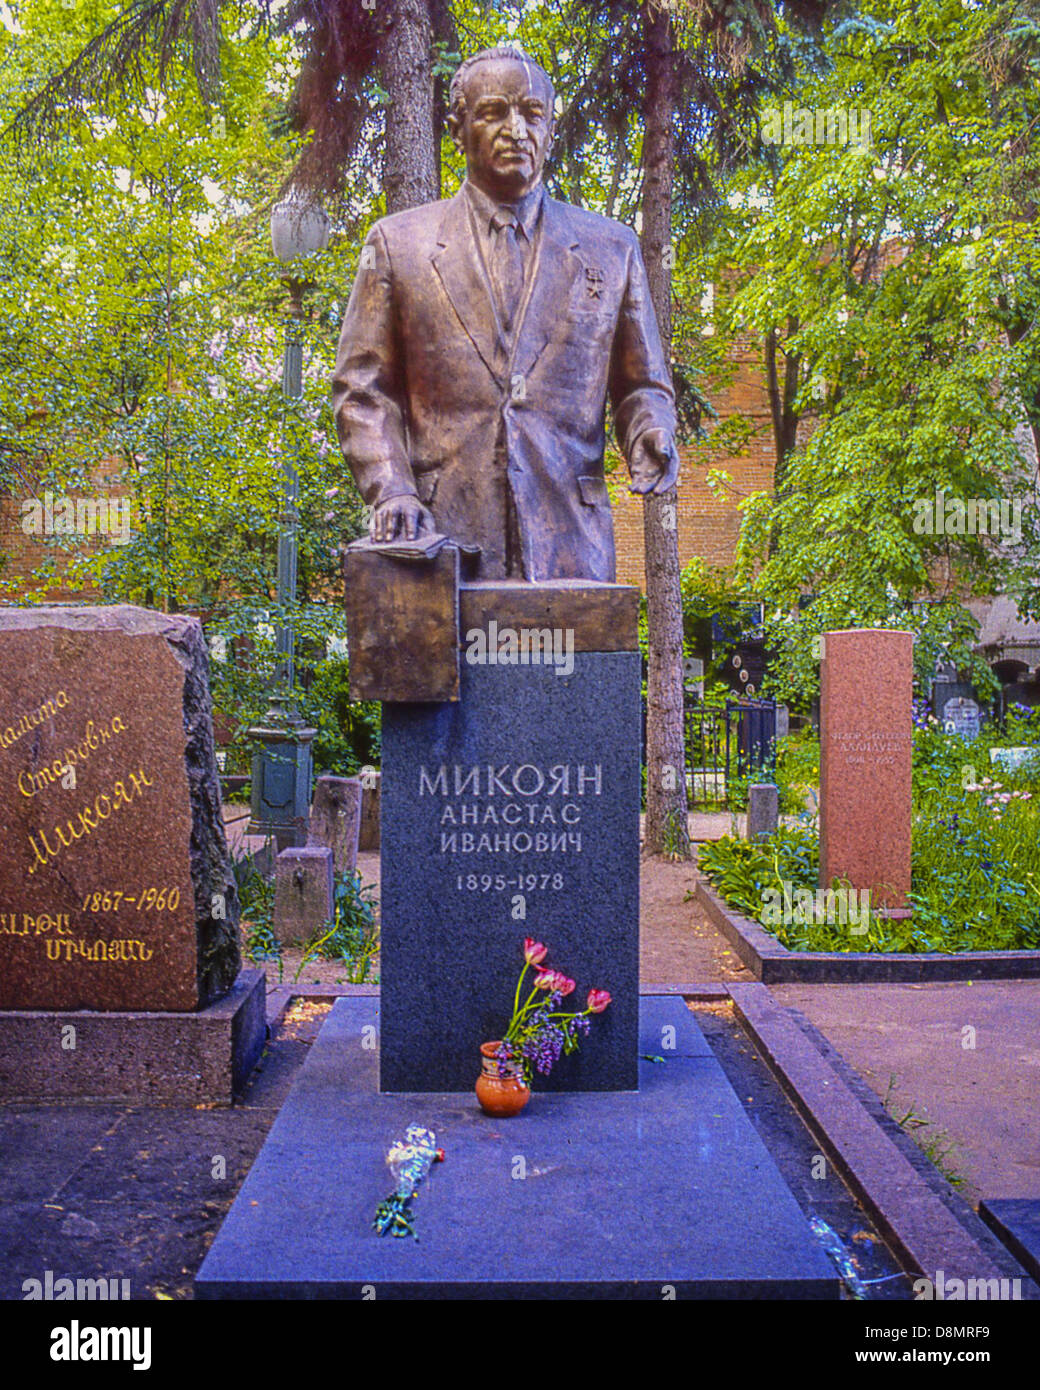 2 mai 1988 - Moscou, RU - La tombe d'Anastas Ivanovitch Mikoyan, (1968Â â€" 1978), dans le cimetière de Novodievitchi. À côté de la 16e siècle couvent Novodievitchi. c'est le plus célèbre cimetière de Moscou. Un célèbre Vieux-bolchevik et homme d'État soviétique, au plus haut niveau dans le parti communiste tout au long de l'ère de Staline et Khrouchtchev, il a occupé plusieurs postes gouvernementaux, y compris le ministre du Commerce extérieur. Il a été président du Présidium du Soviet suprême, le chef de l'état nominal, à partir de 1964 jusqu'à sa retraite forcée en 1965. (Crédit Image : © Arnold Drapkin/ZUMAPRESS.com) Banque D'Images